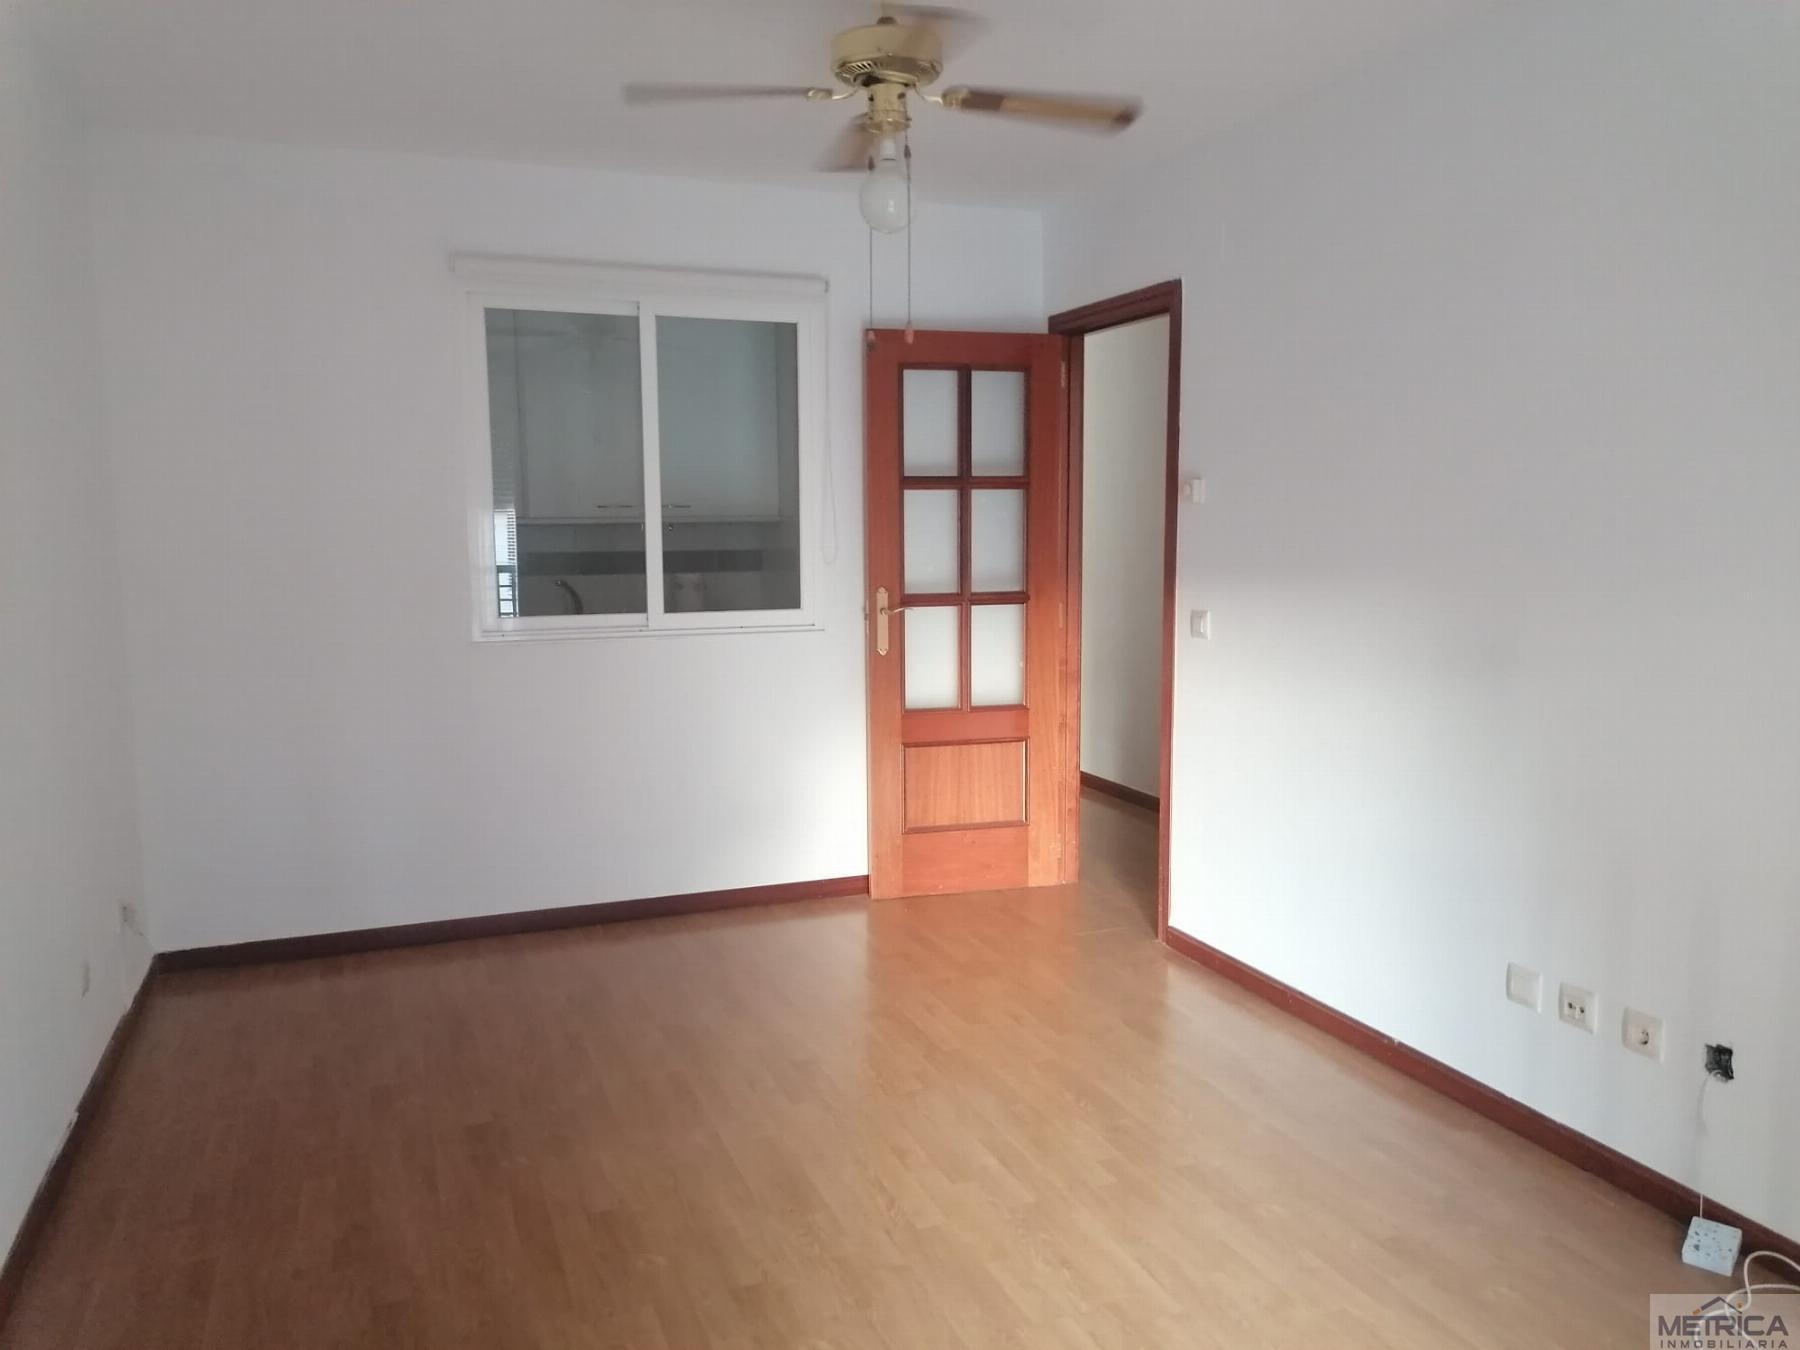 For sale of apartment in Santa Marta de Tormes